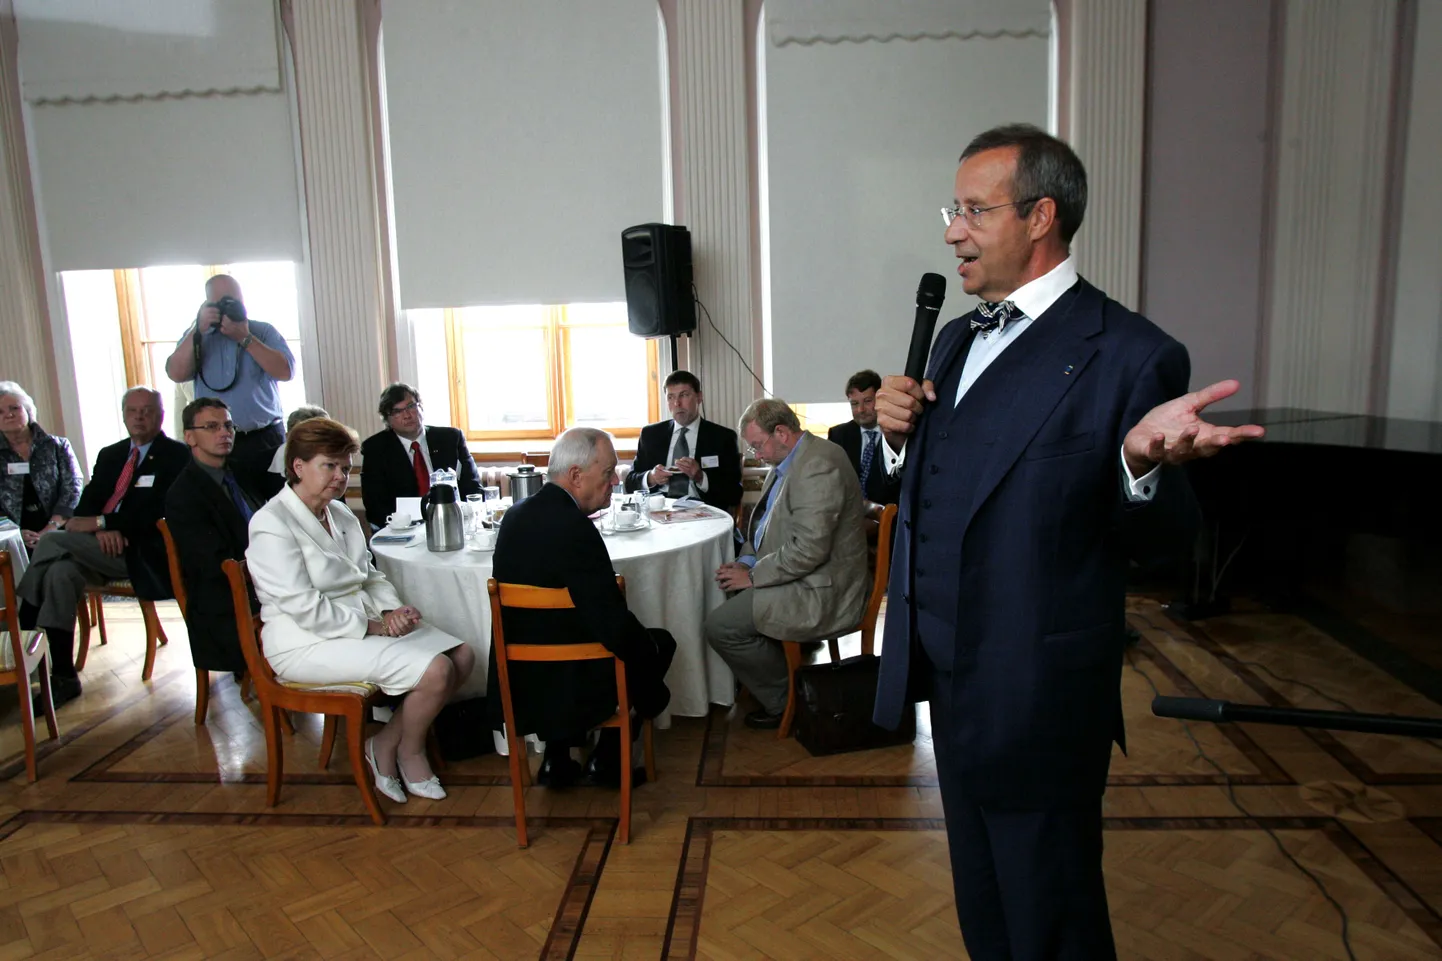 Eesti sõprade vestlus Teaduste Akadeemia saalis. Kõneleb president Toomas Hendrik Ilves.